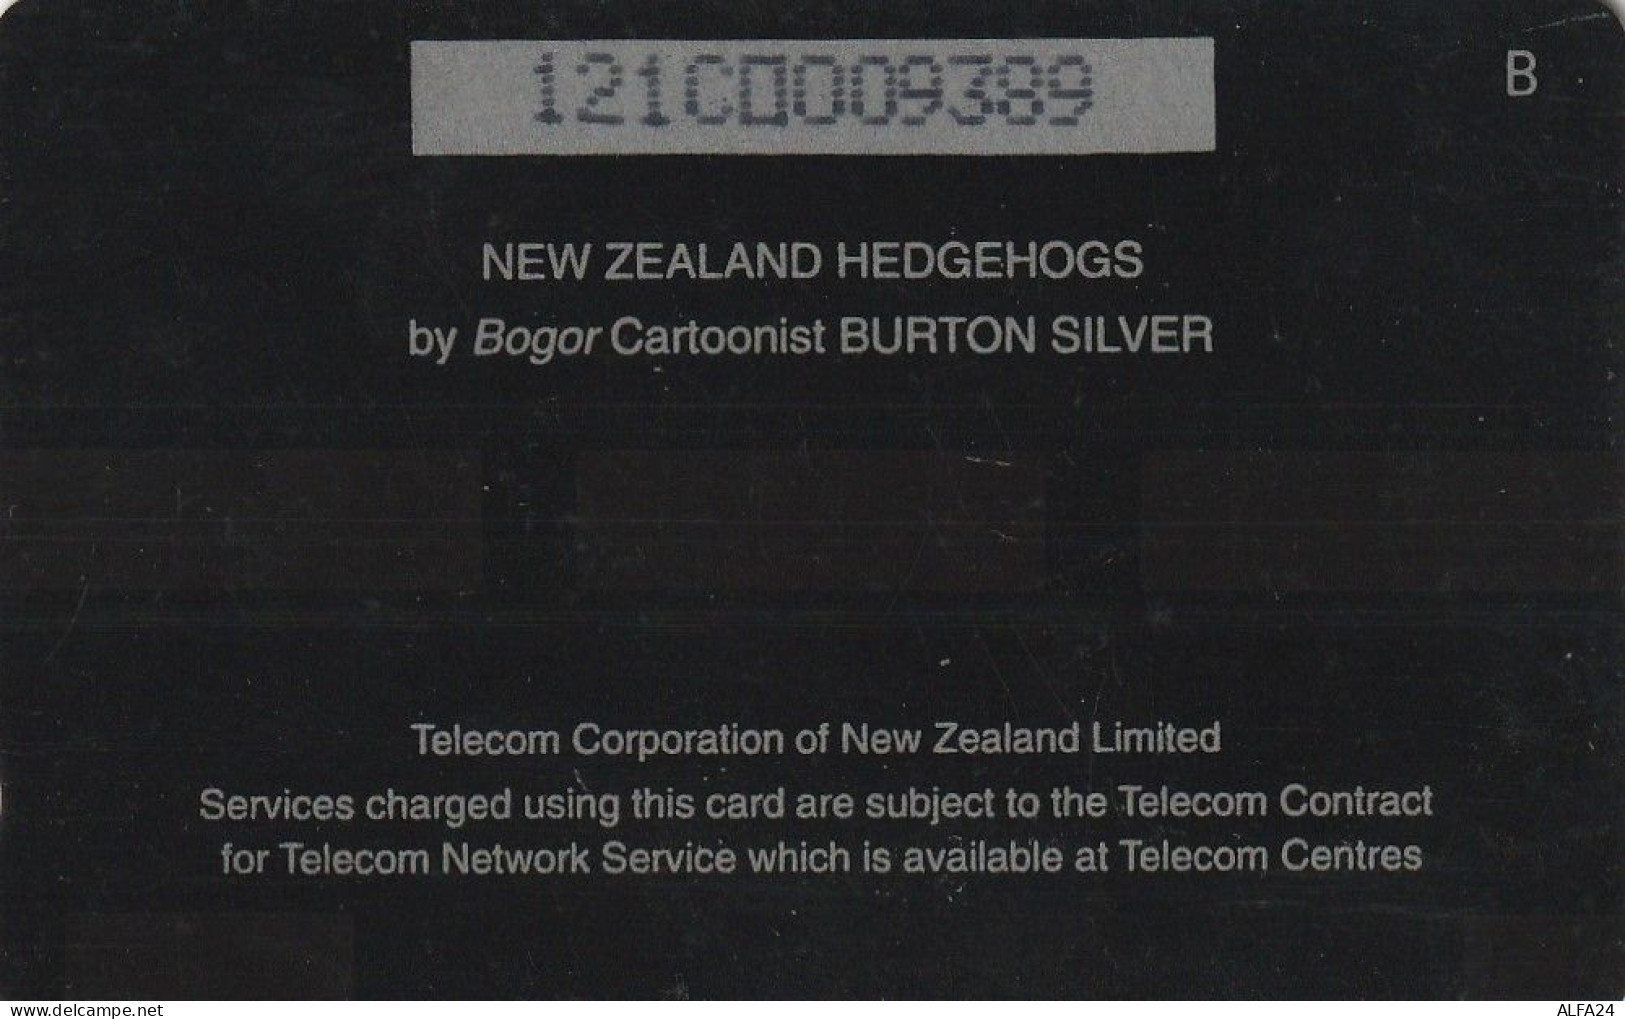 PHONE CARD NUOVA ZELANDA  (CZ733 - Neuseeland